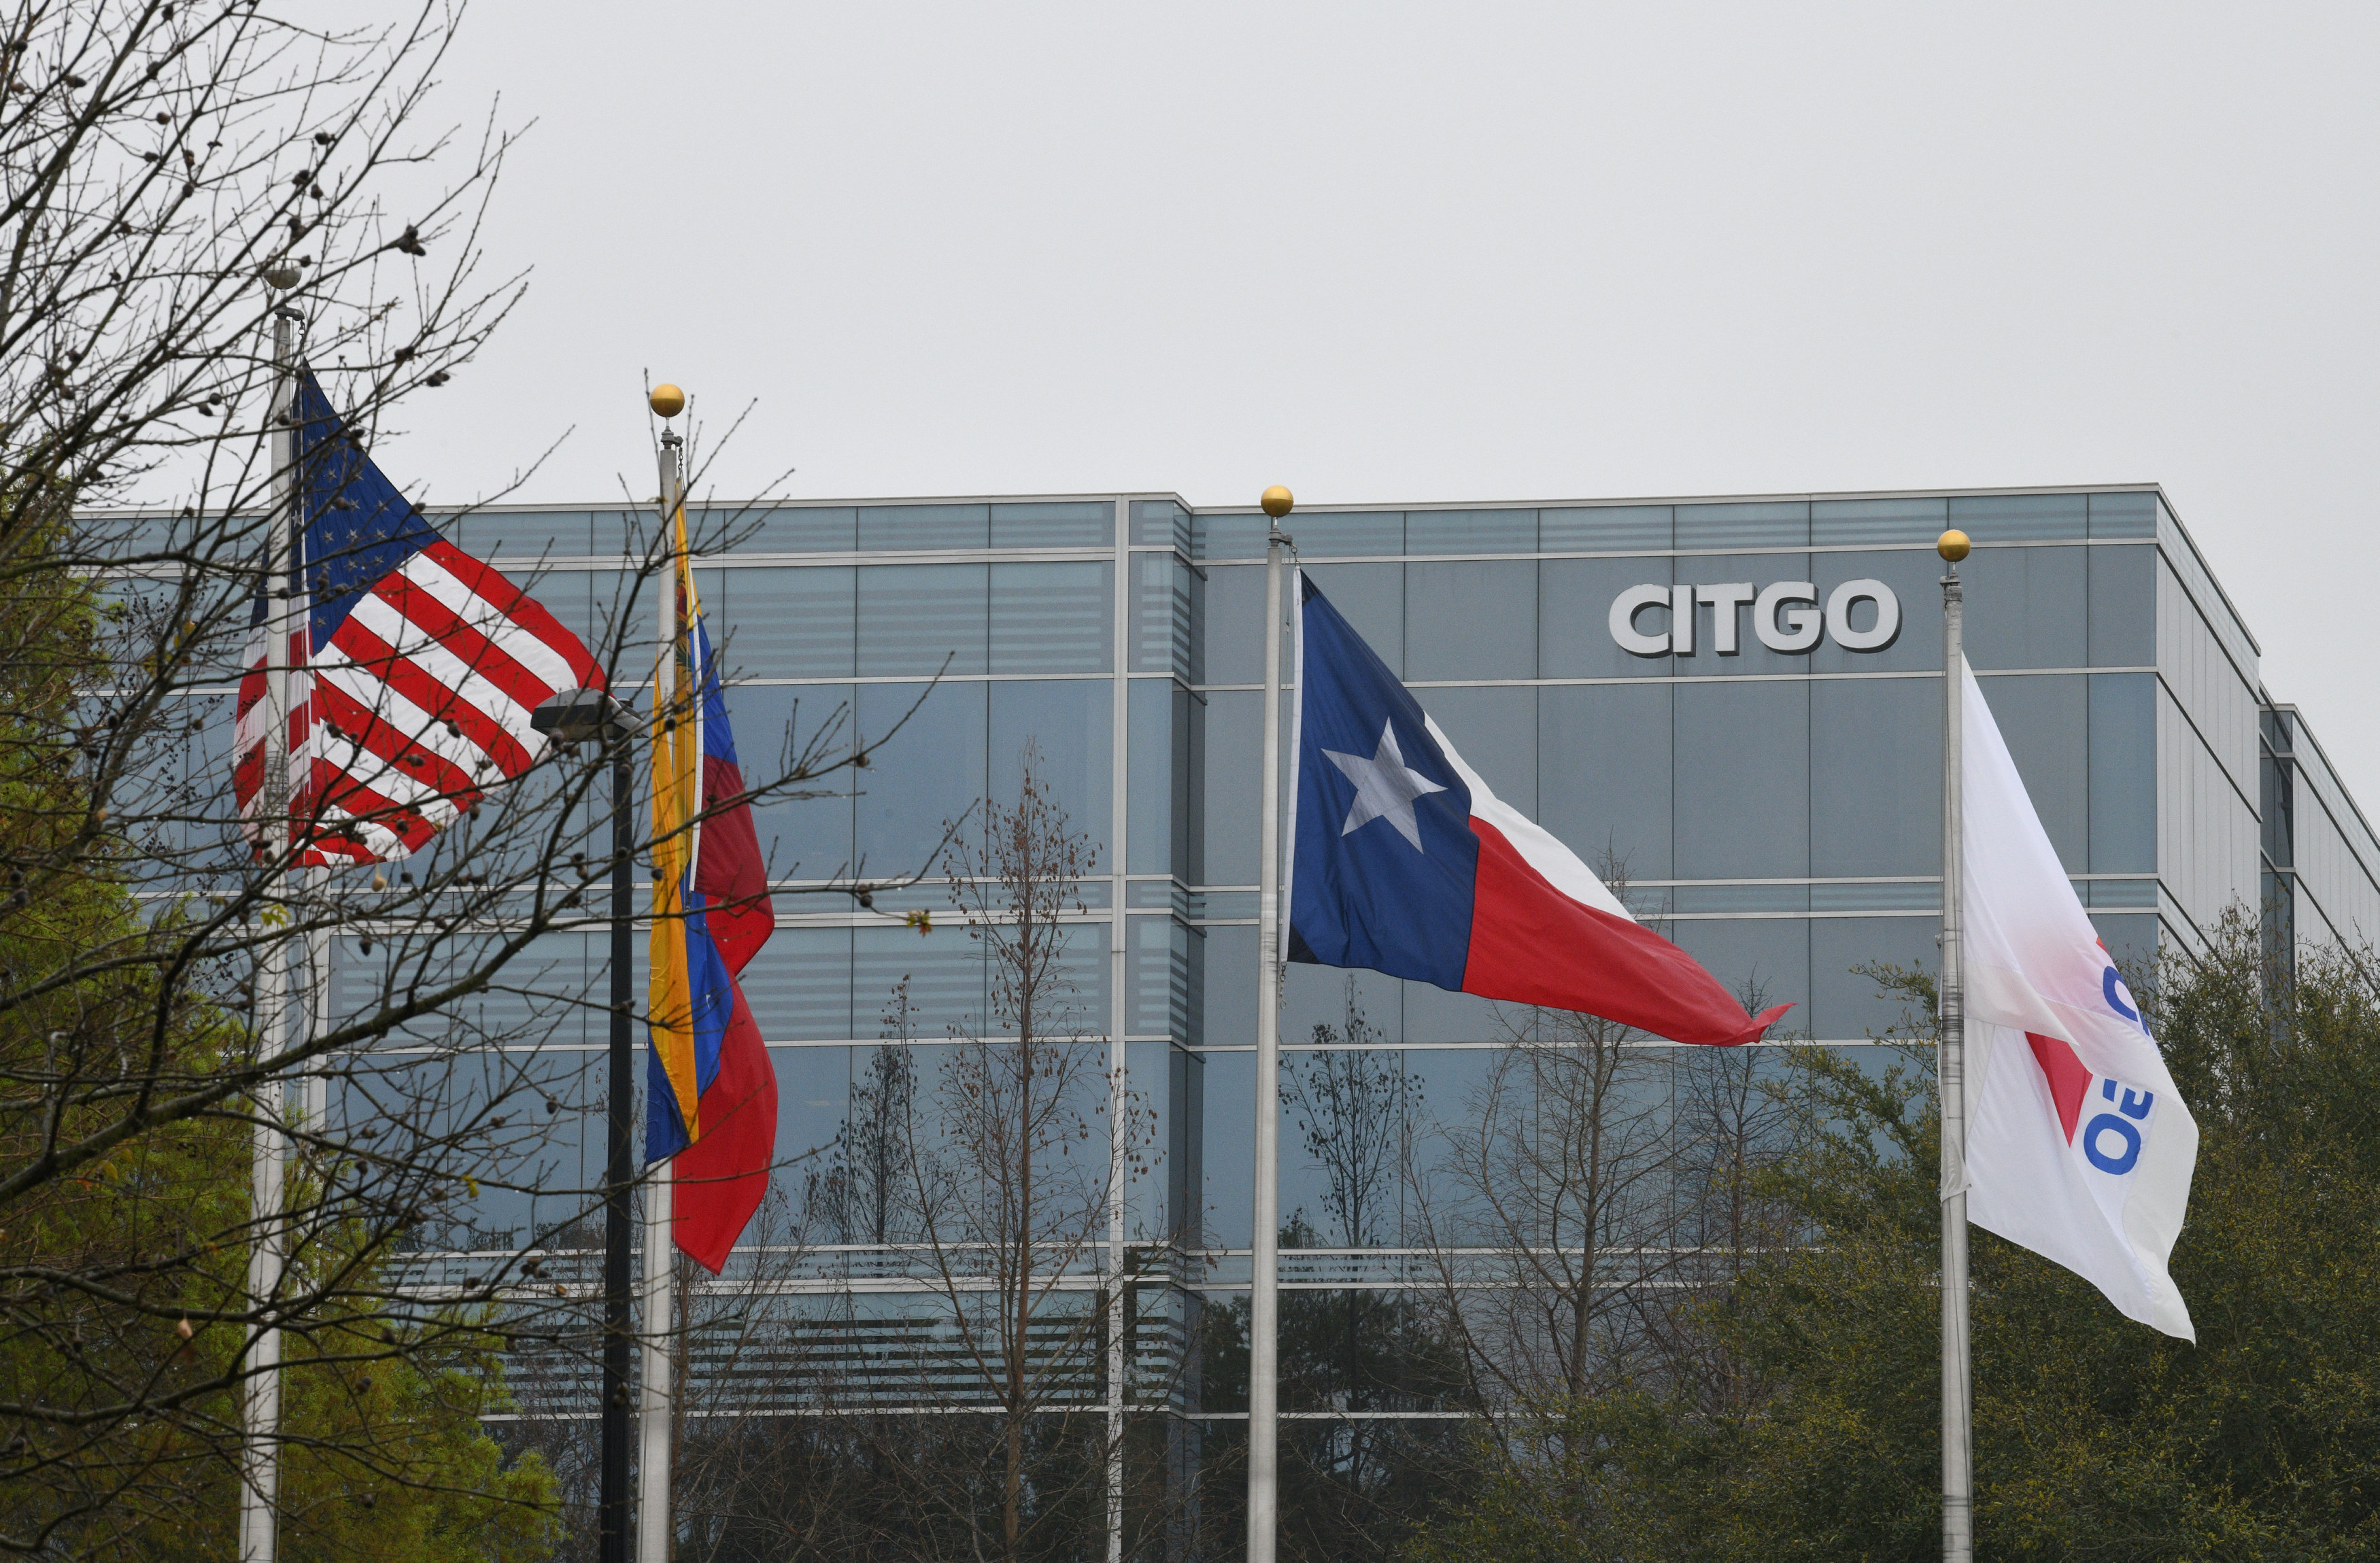 Miembros del directorio de Citgo nombrados por Guaidó llegaron a Houston